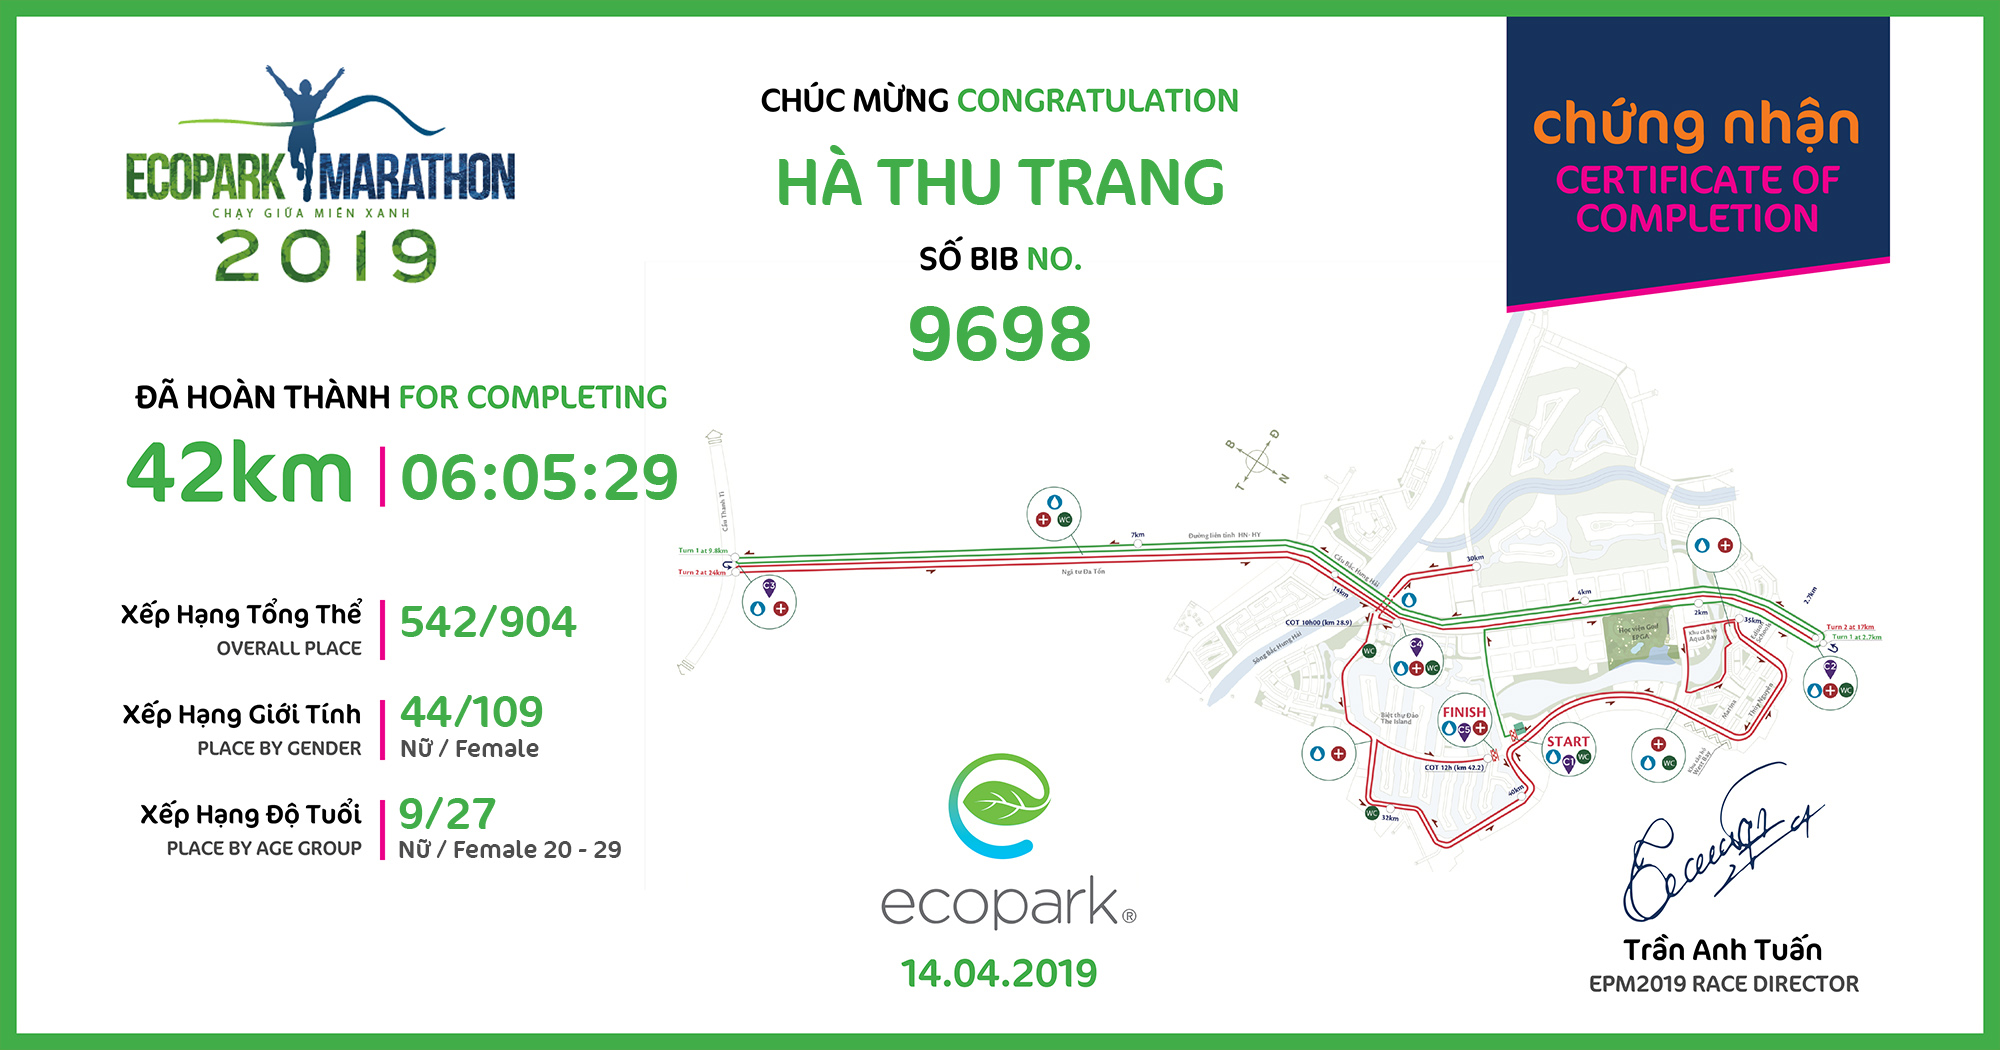 9698 - Hà Thu Trang